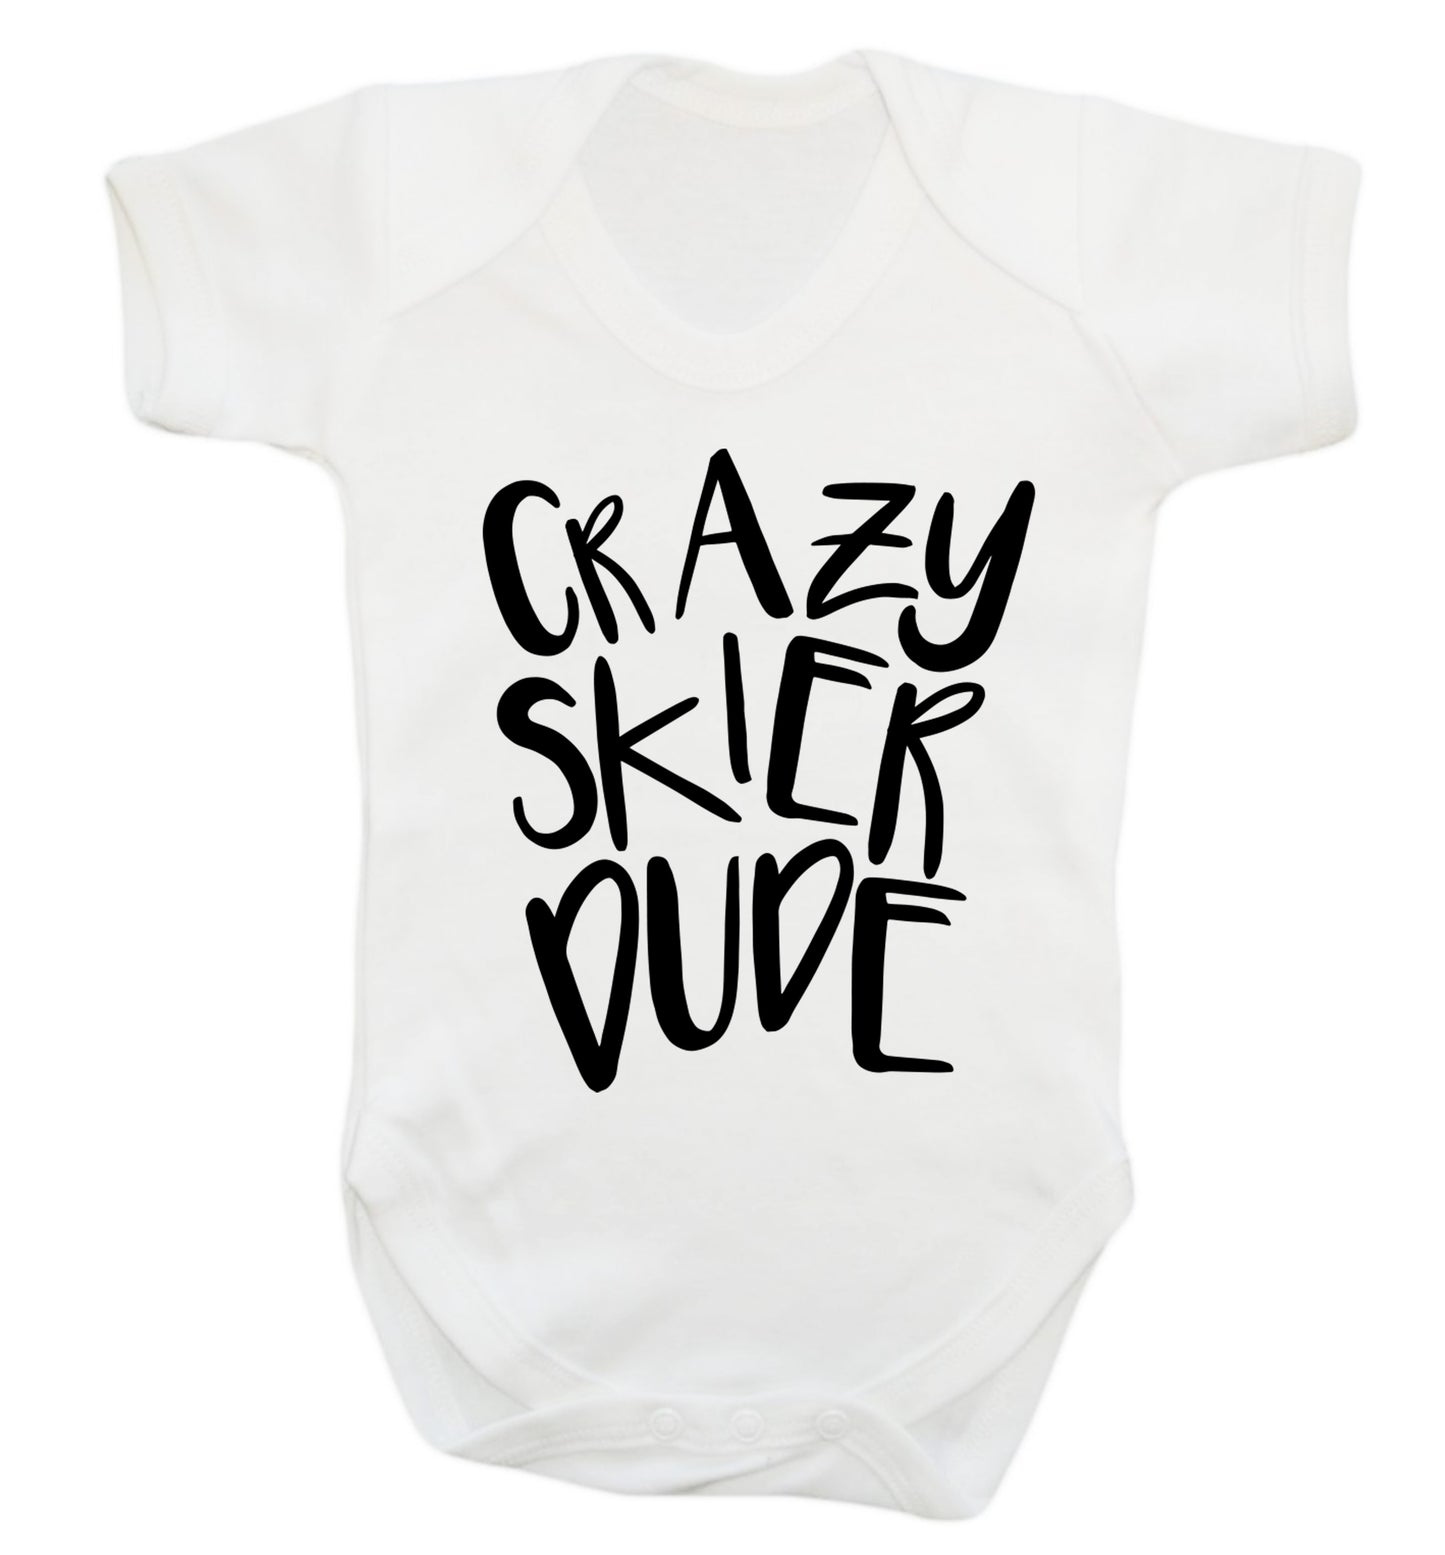 Crazy skier dude Baby Vest white 18-24 months